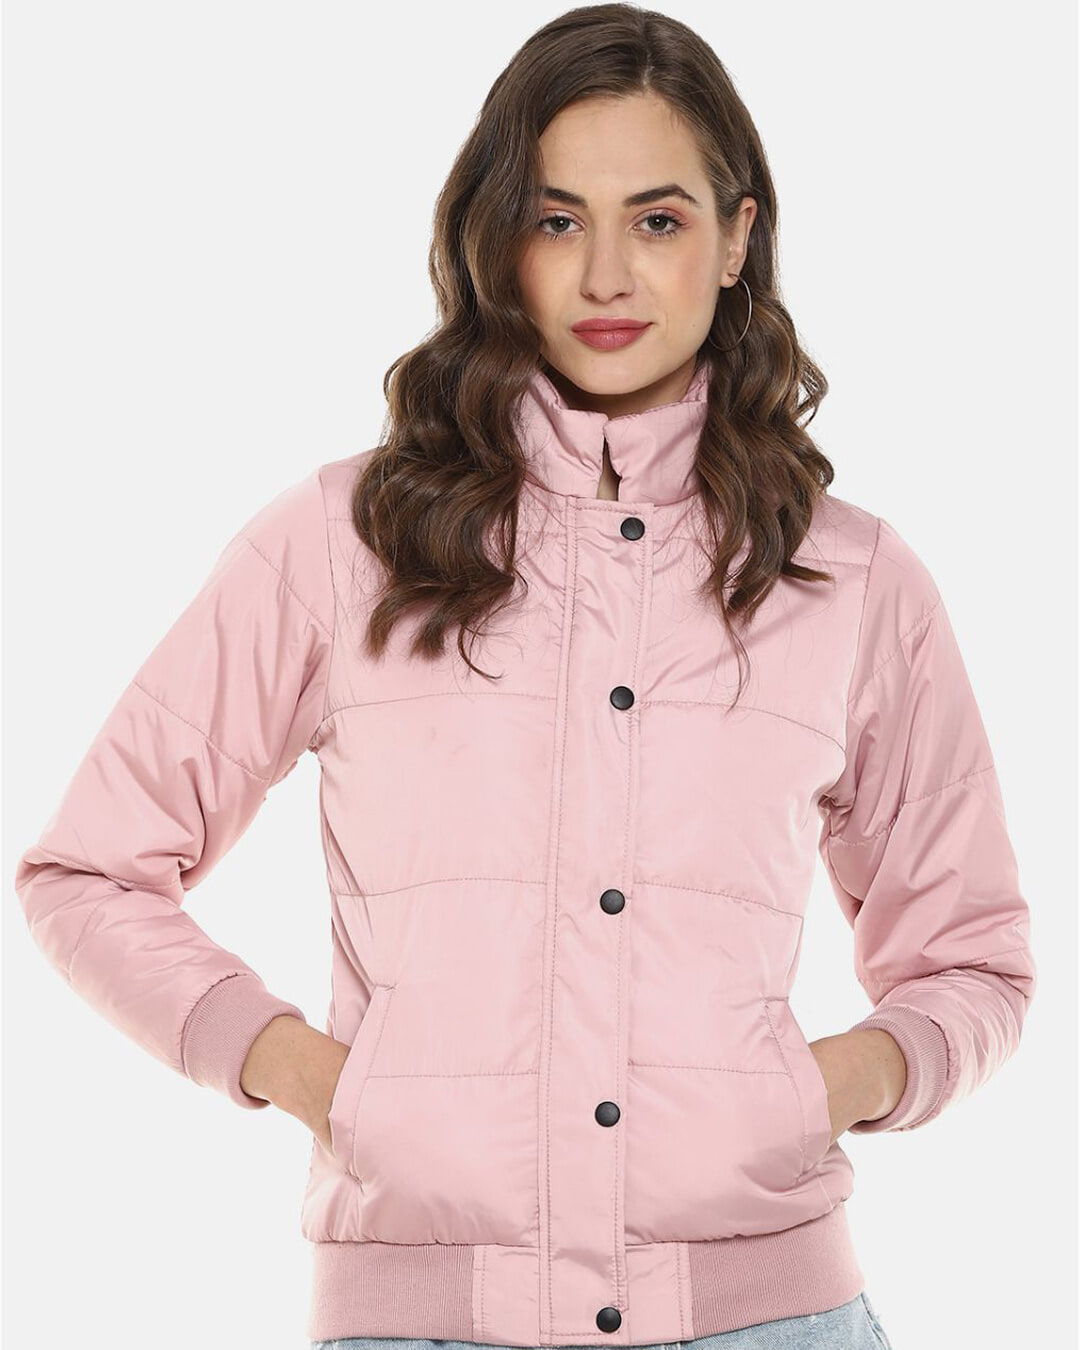 Buy Women's Pink Windcheater Bomber Jacket Online at Bewakoof